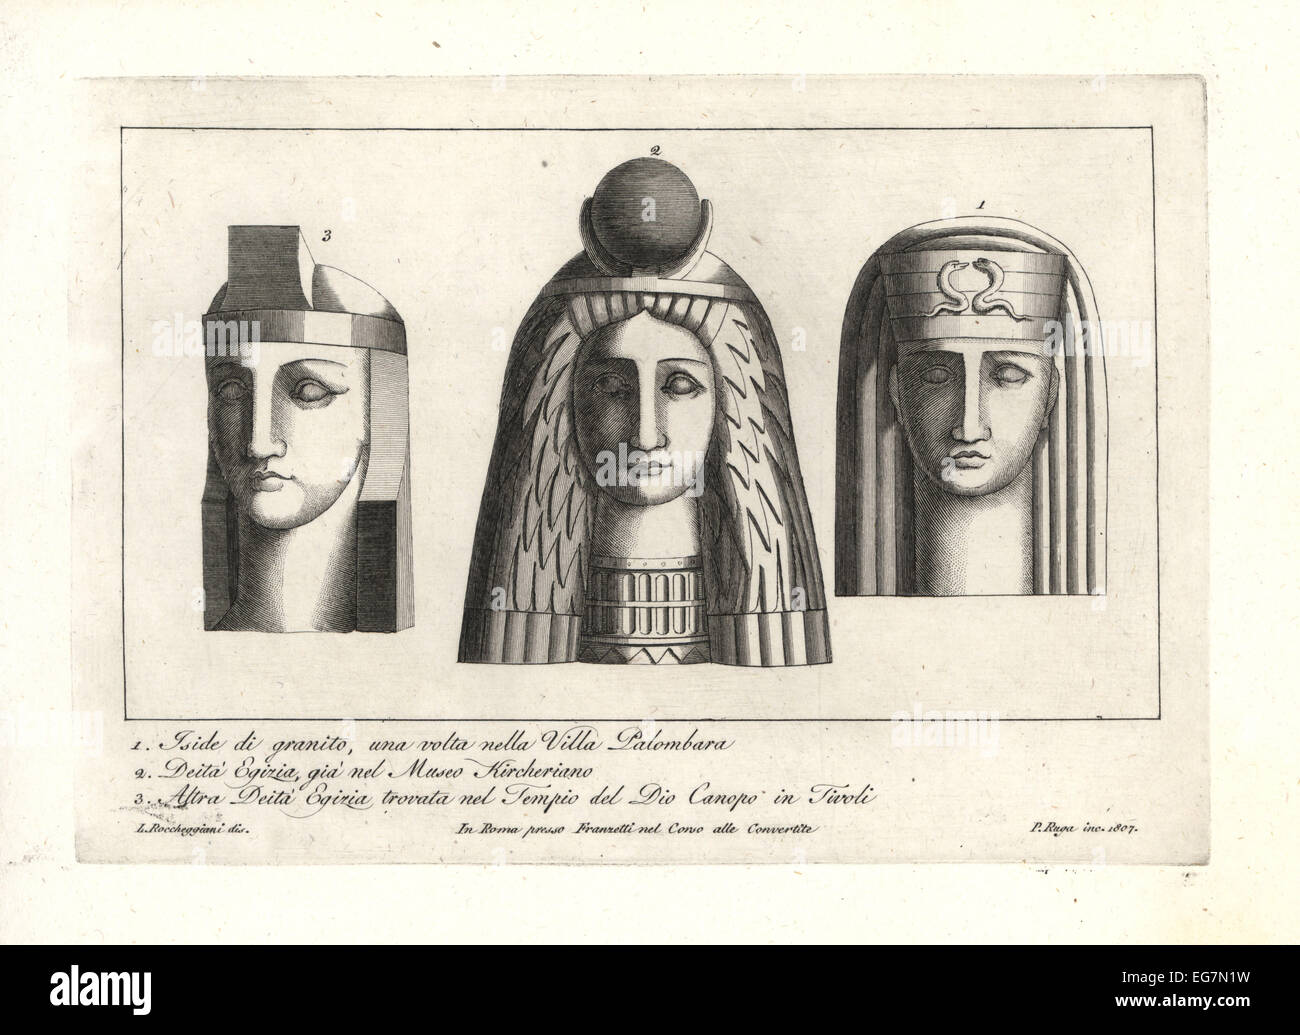 Divinità egizia immagini e fotografie stock ad alta risoluzione - Alamy